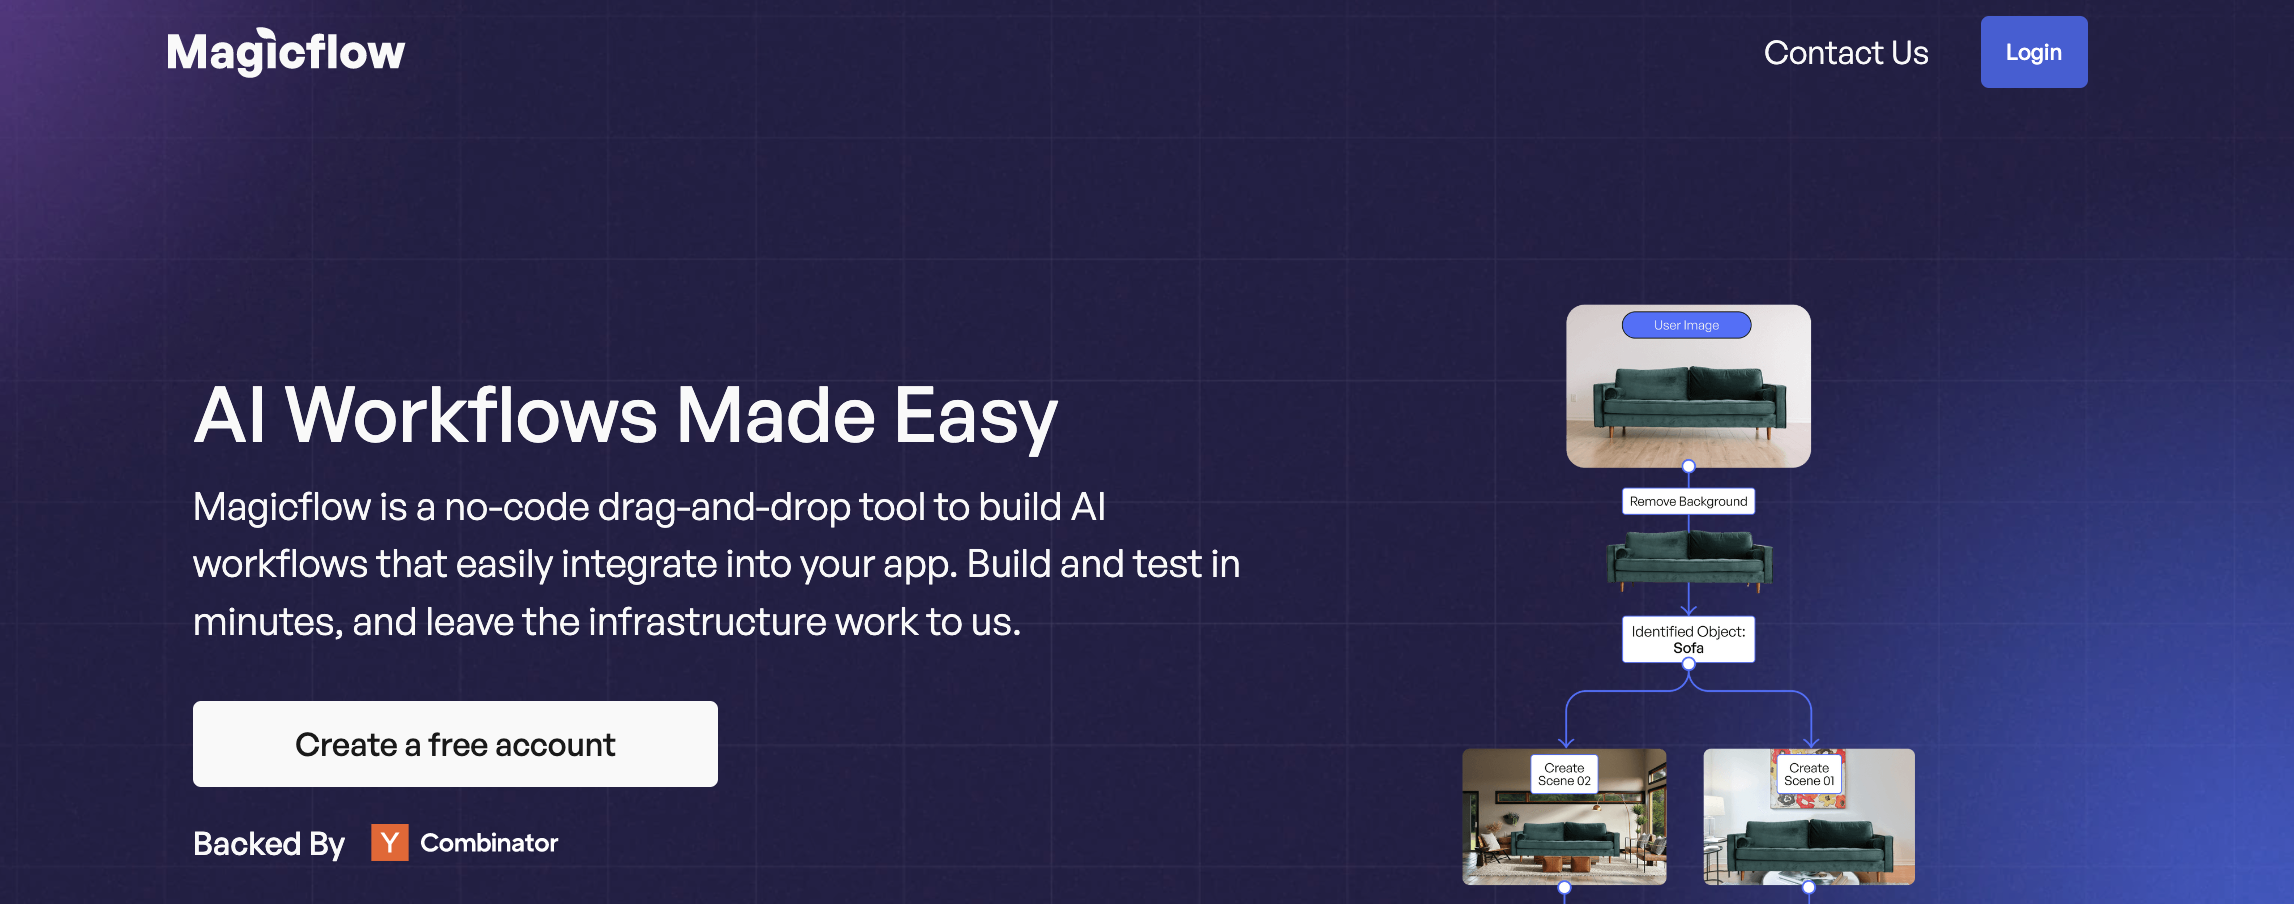 MagicFlow-Ein No-Code-Drag & Drop-Tool zum Erstellen von KI-Workflows und App-Integration